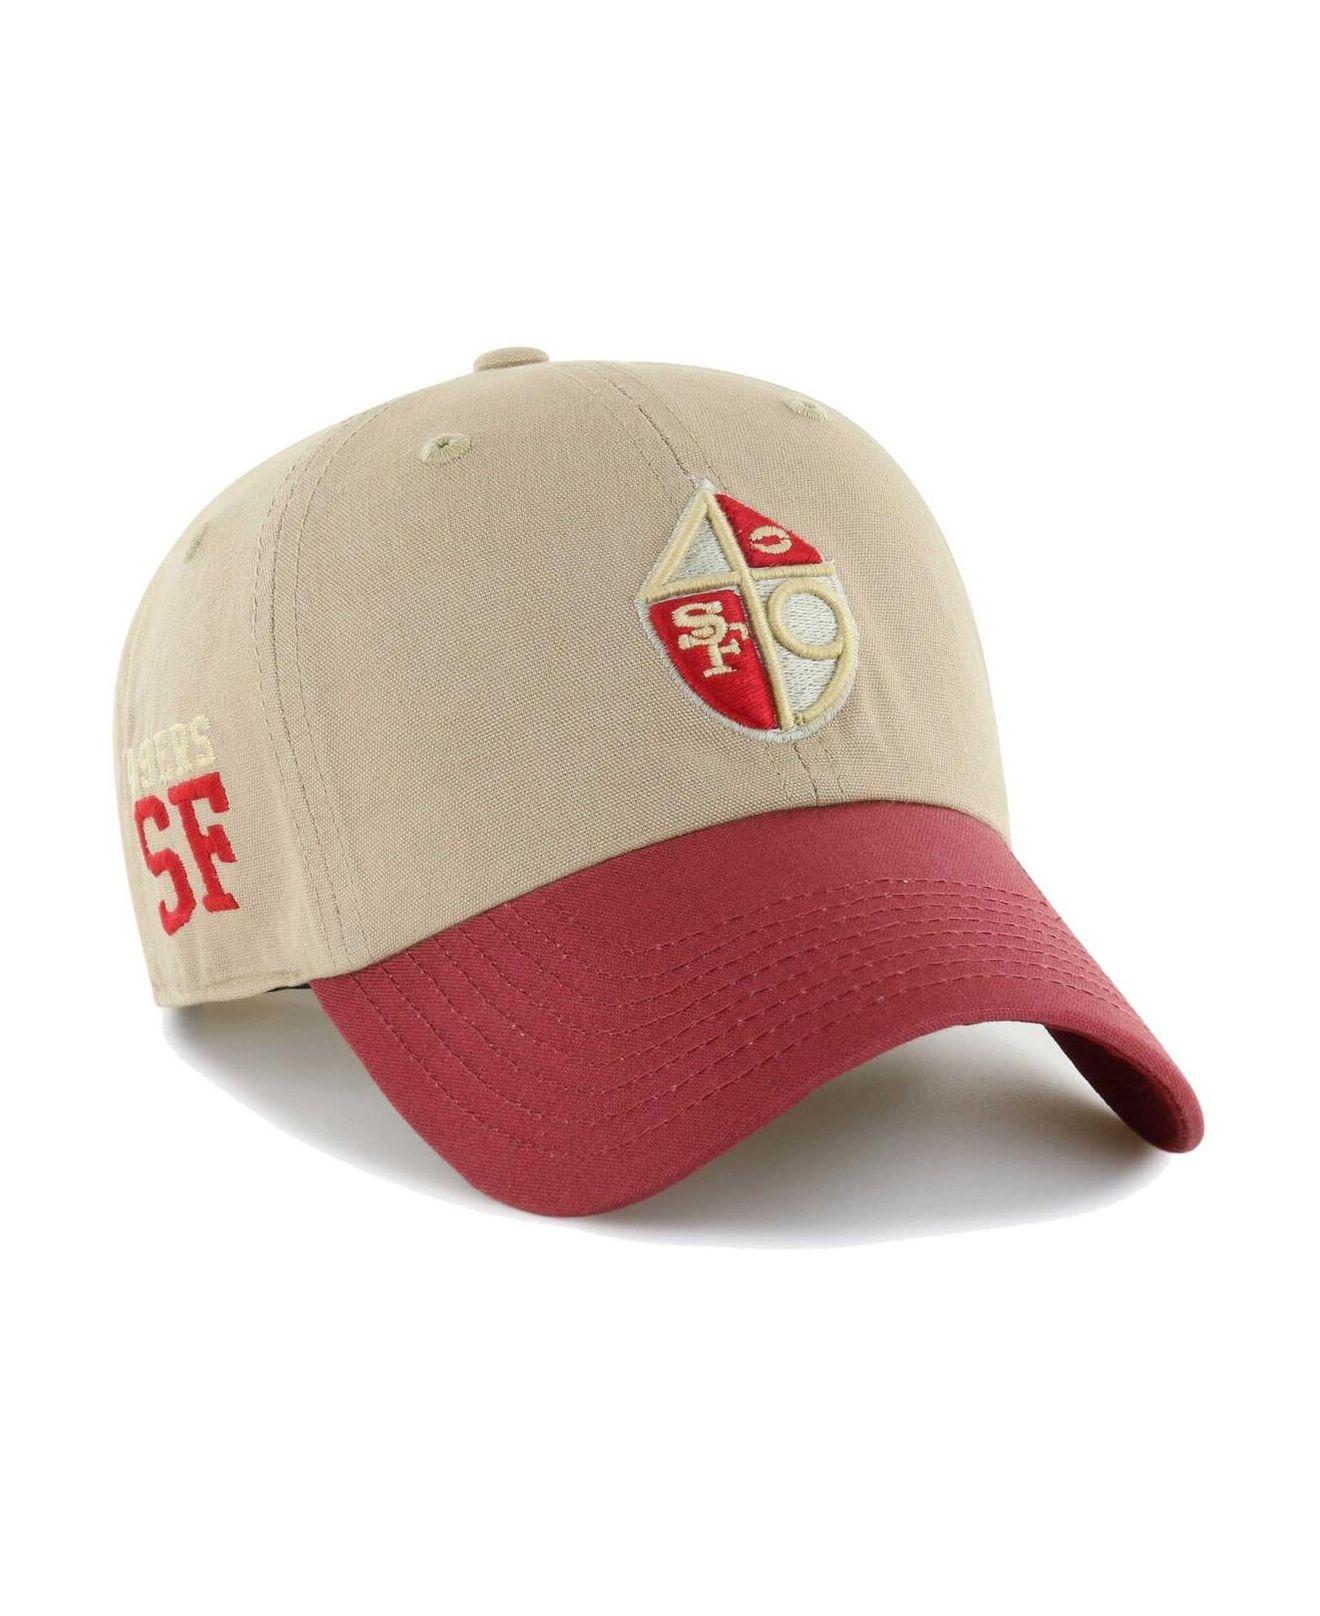 49ers adjustable hat